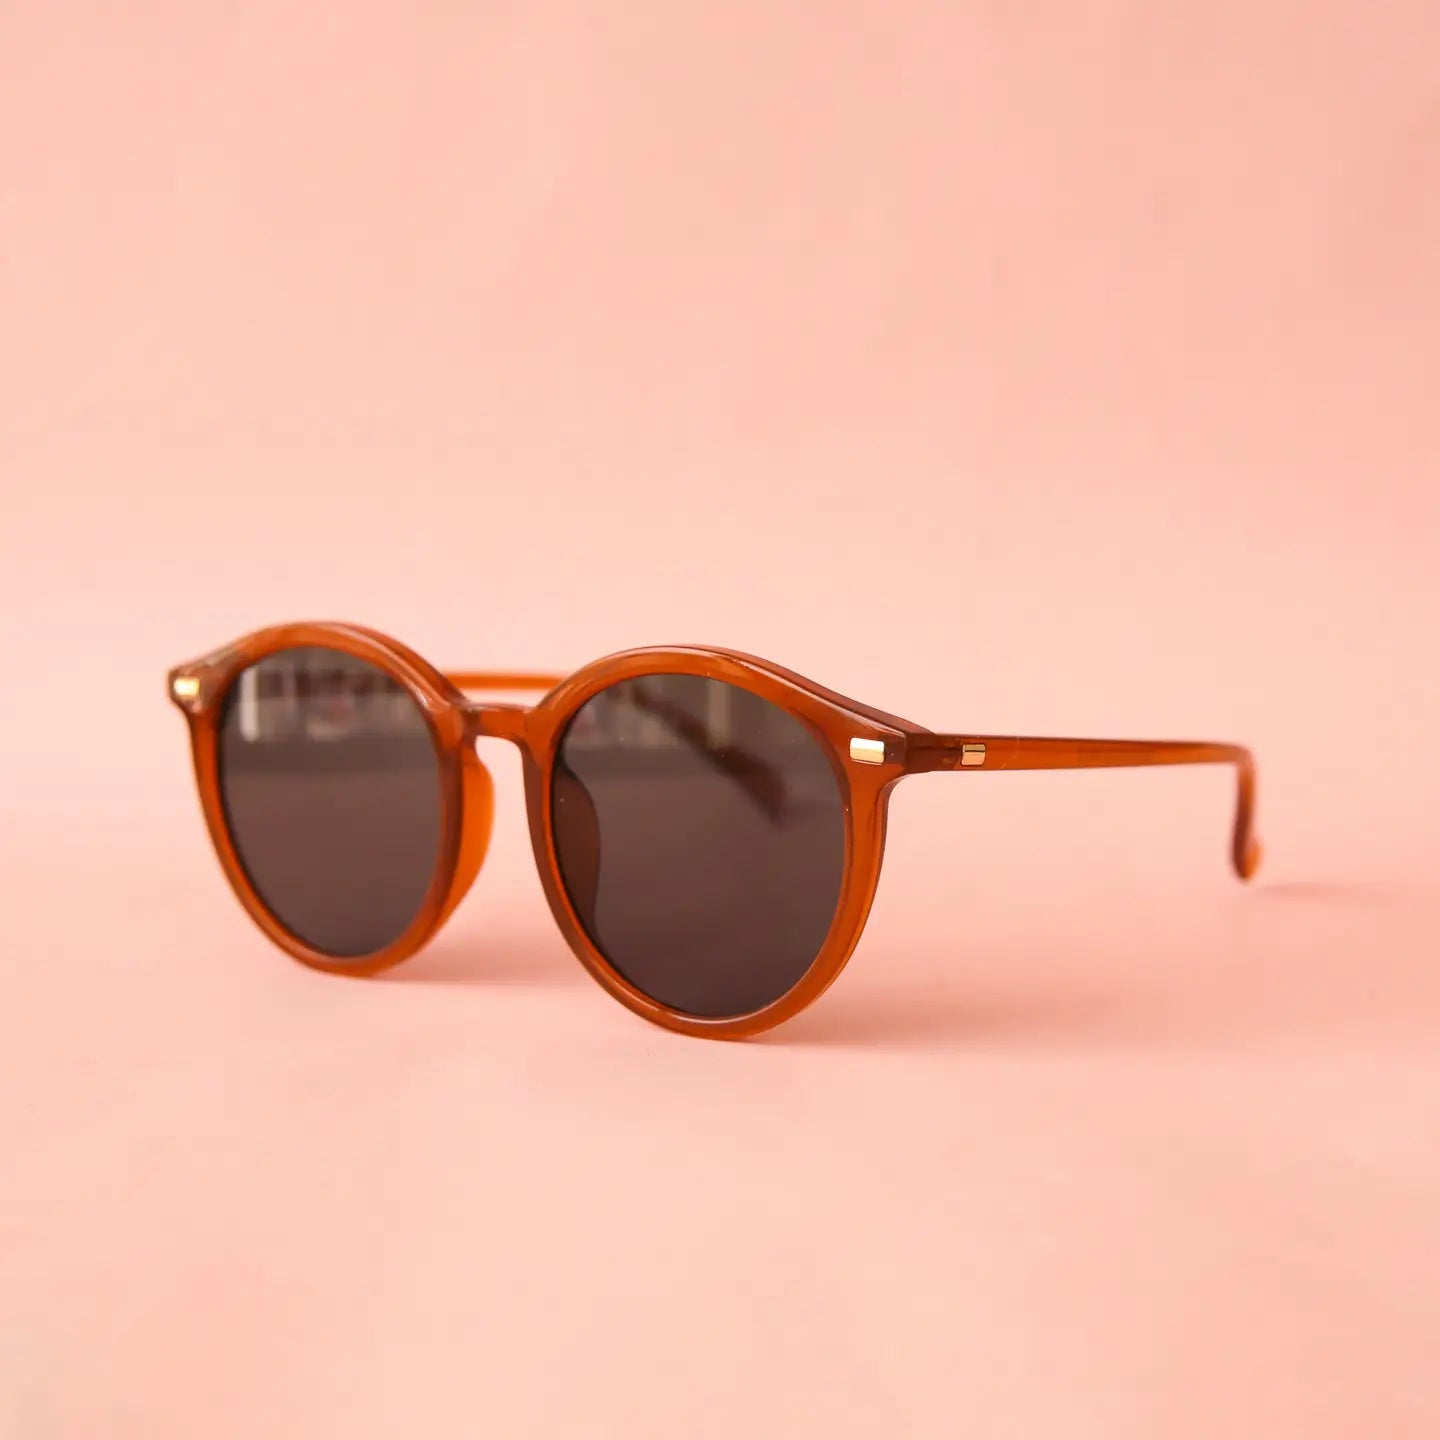 sam sunglasses in orange